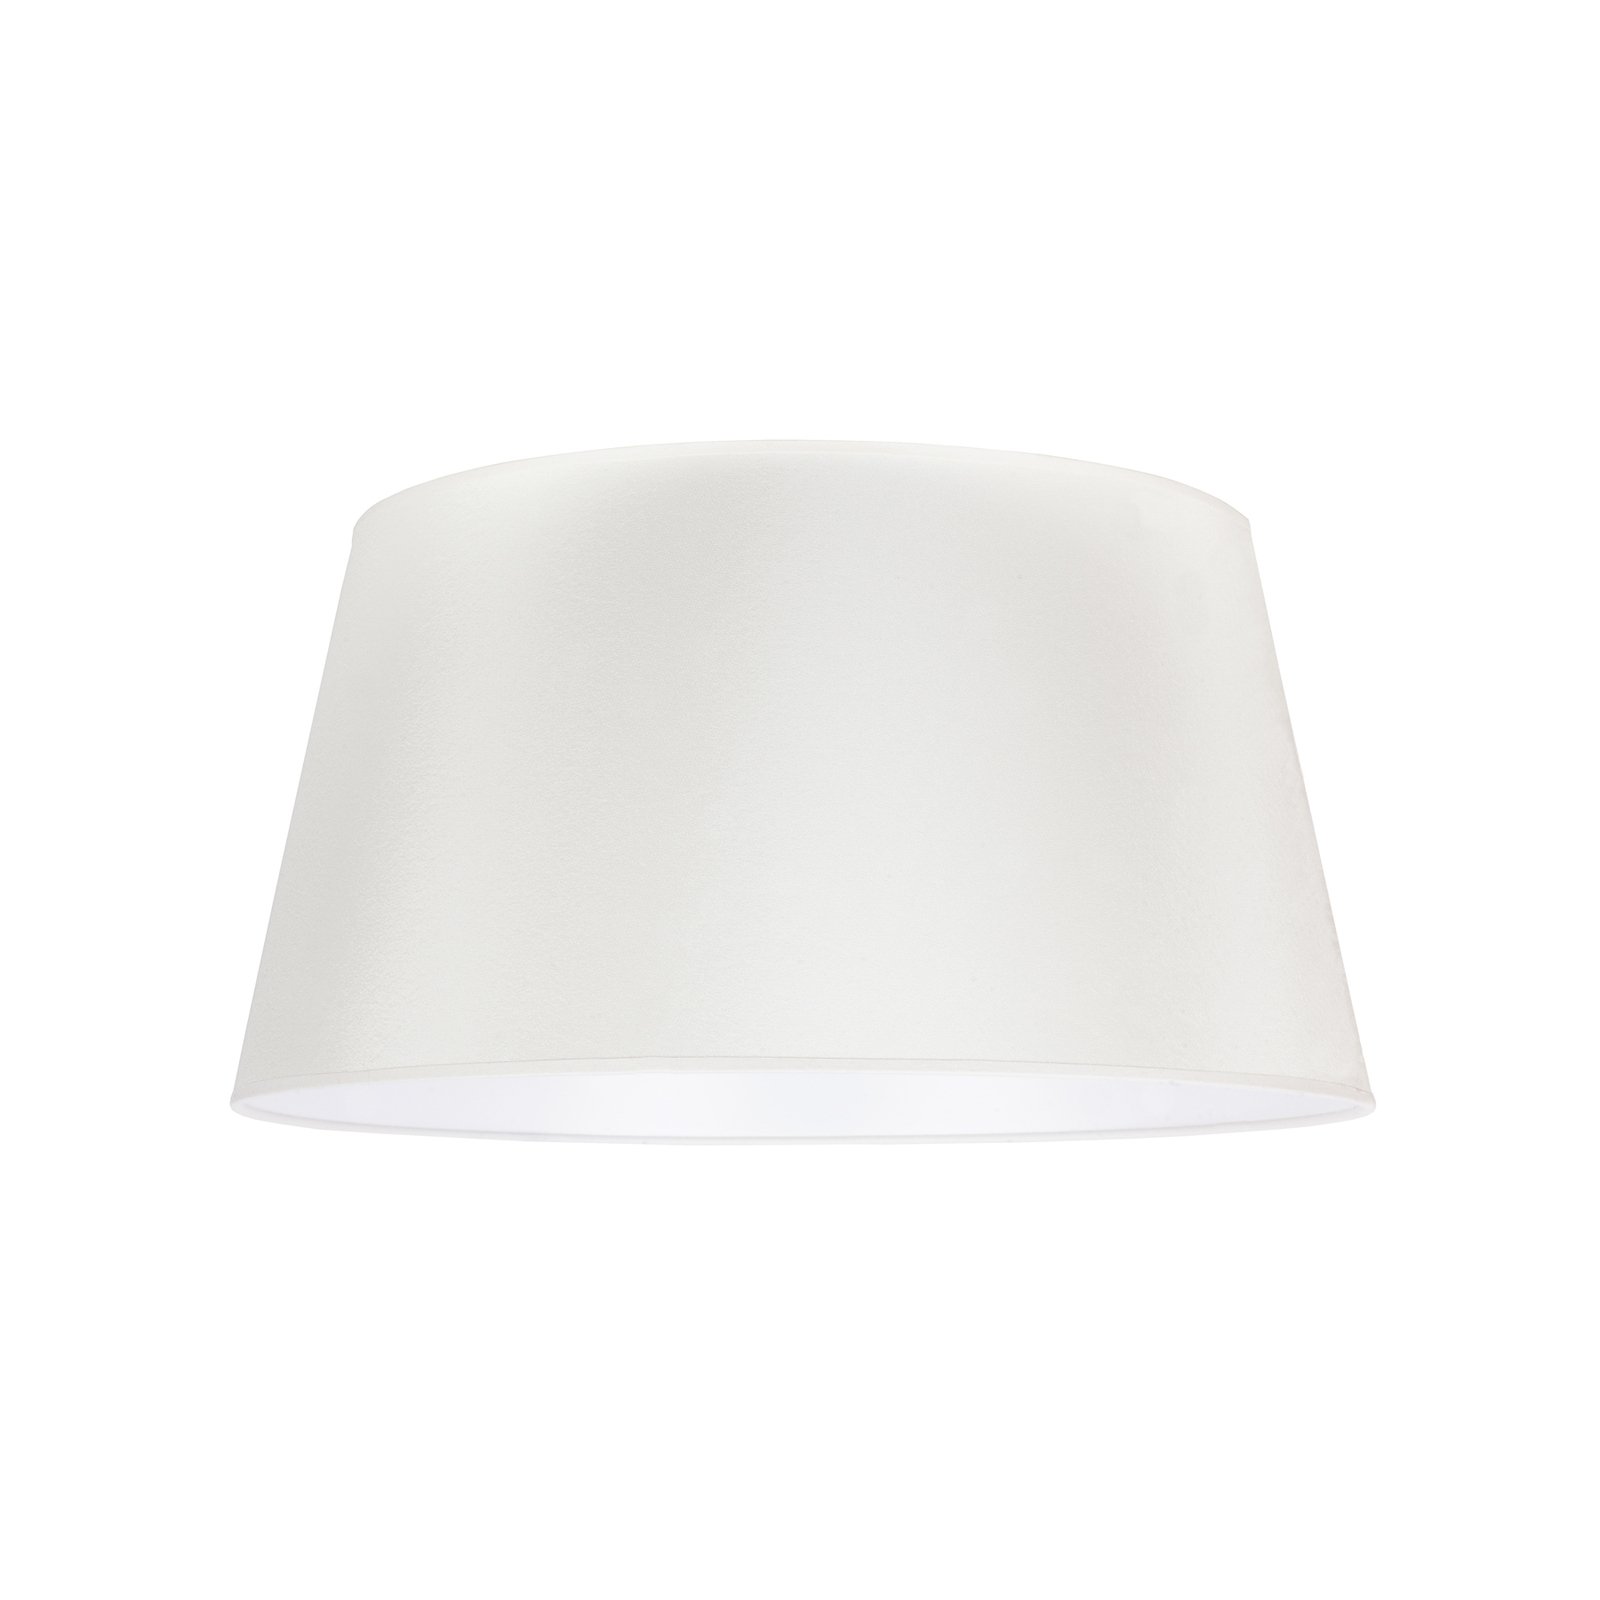 Cone lampshade height 25.5 cm, ecru/white chintz